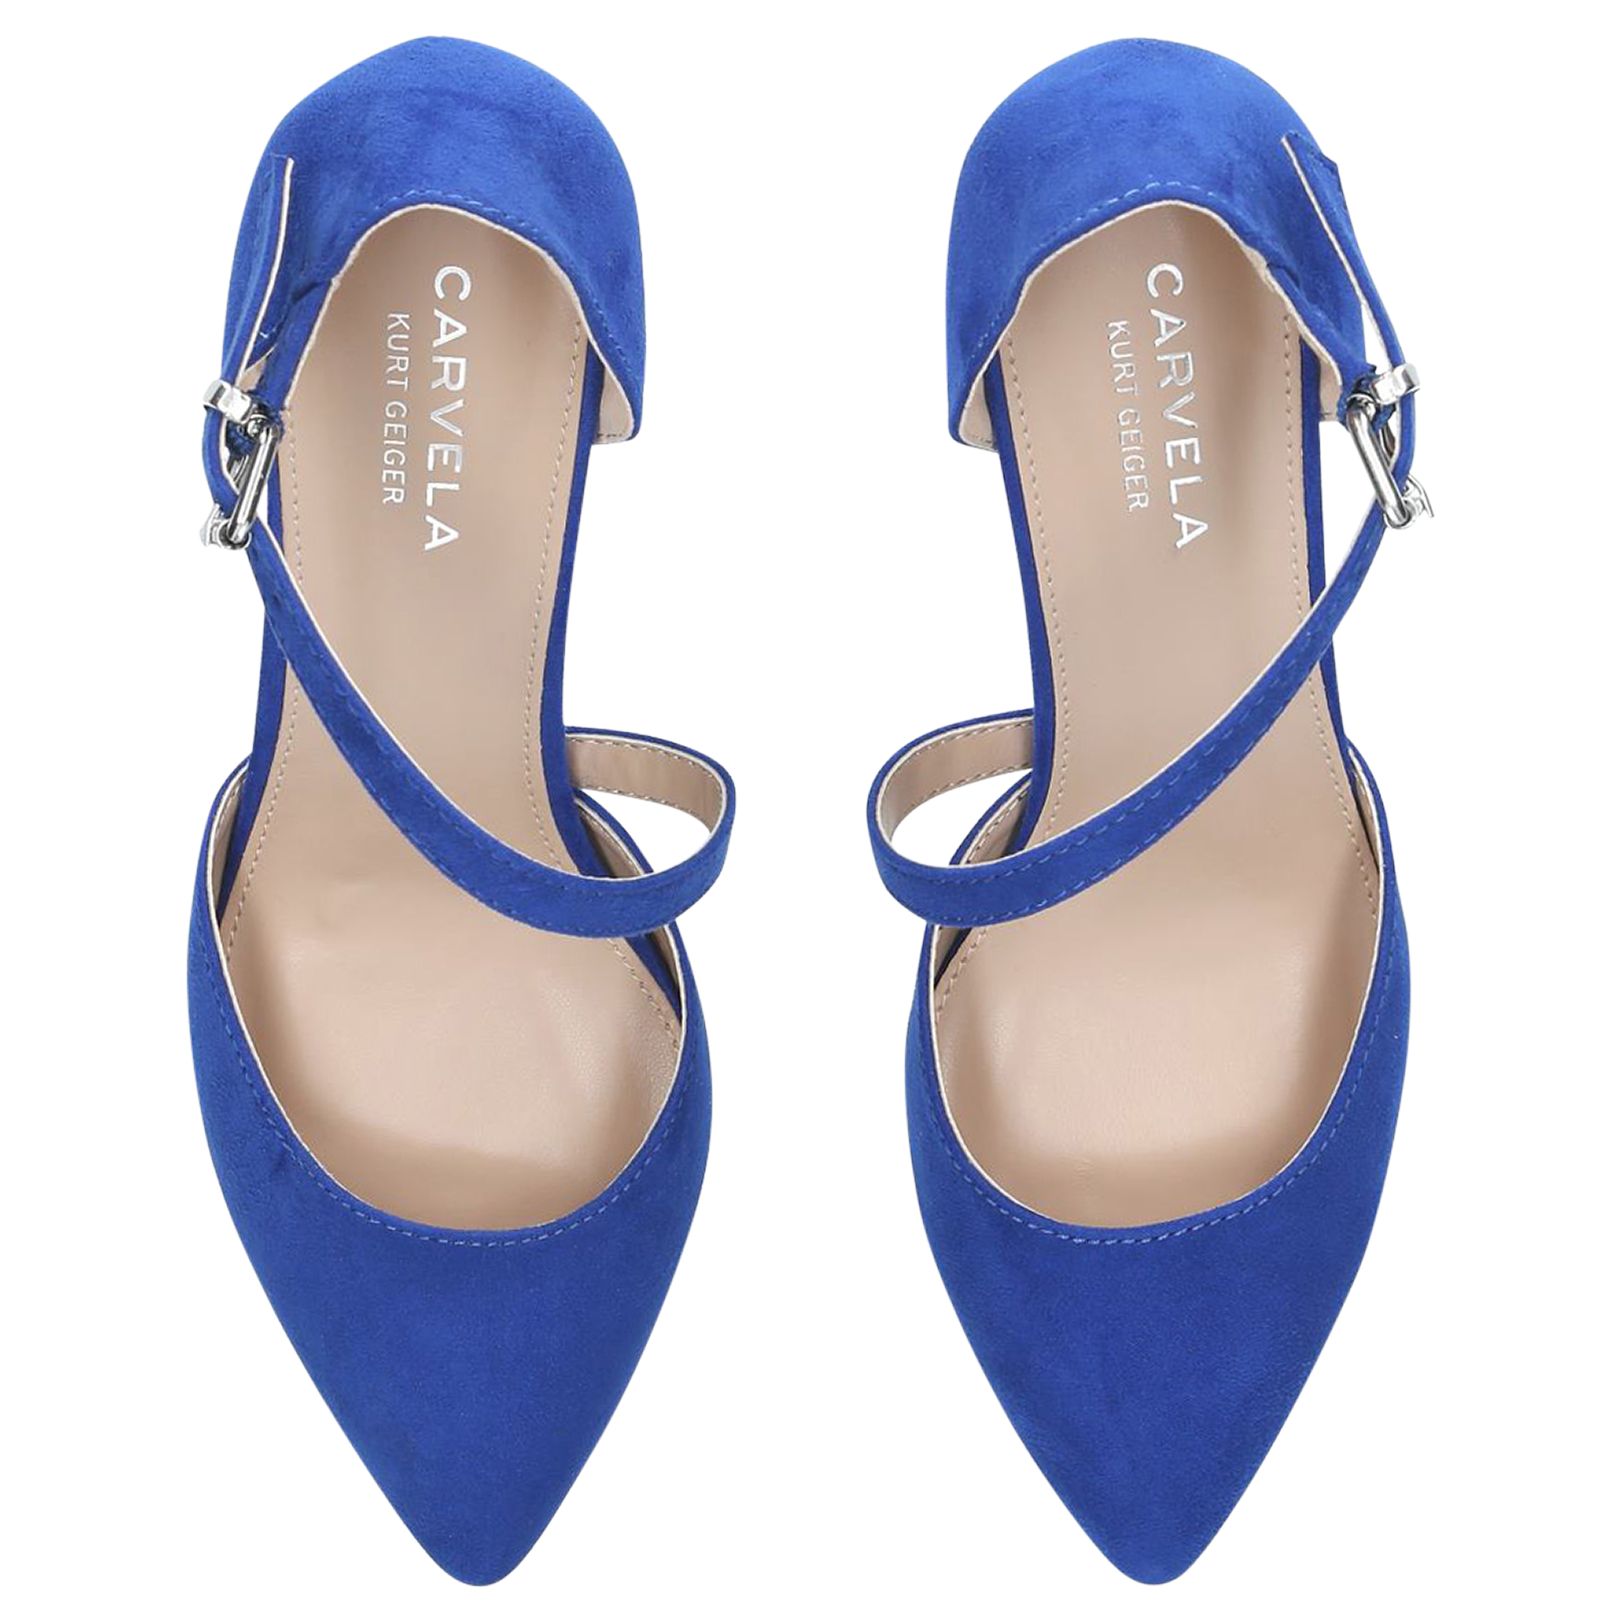 carvela shoes blue